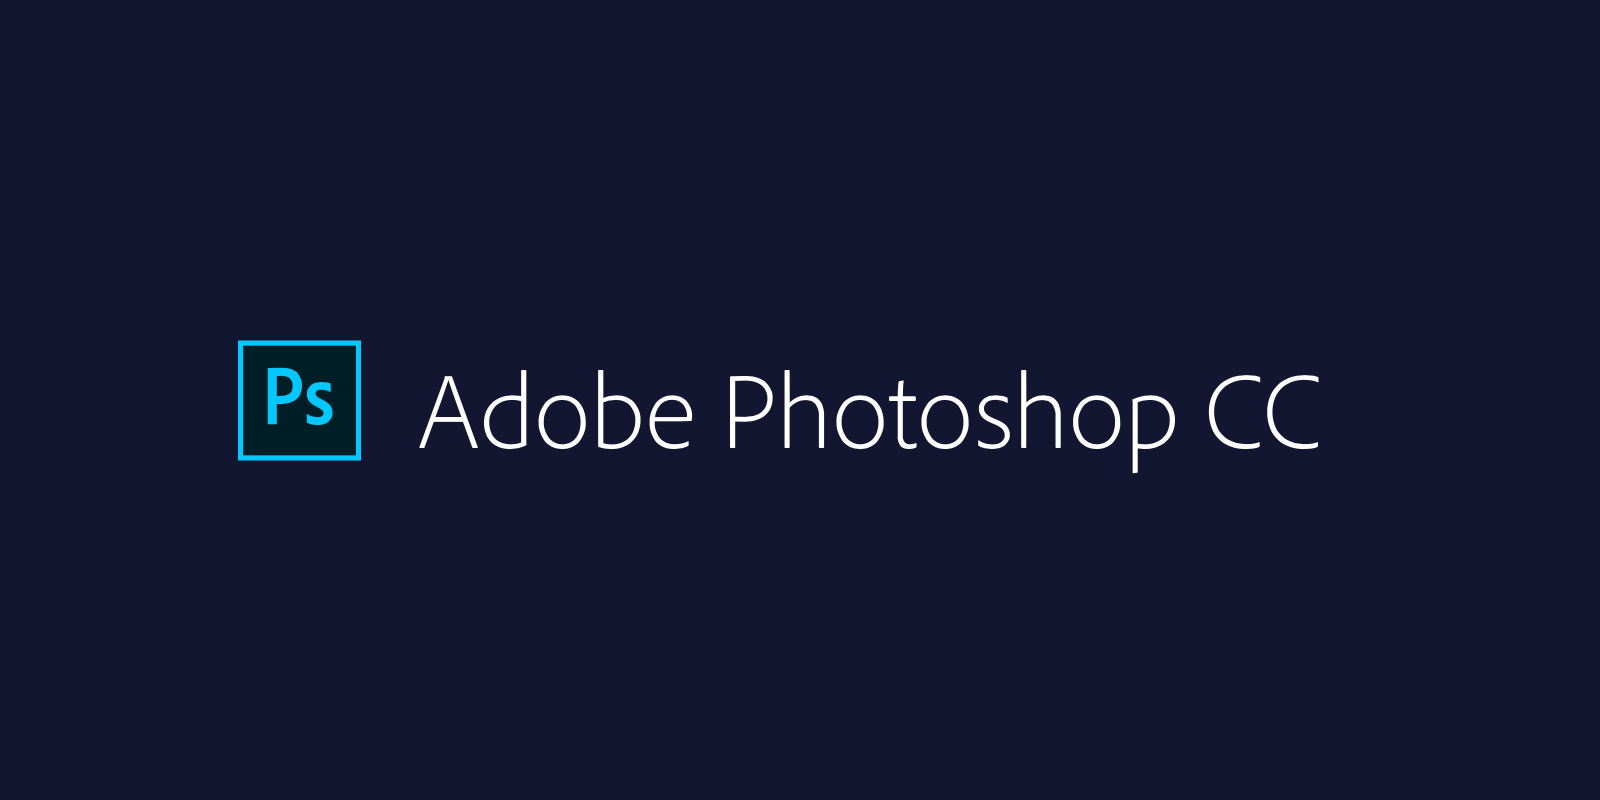 adobe photoshop logo